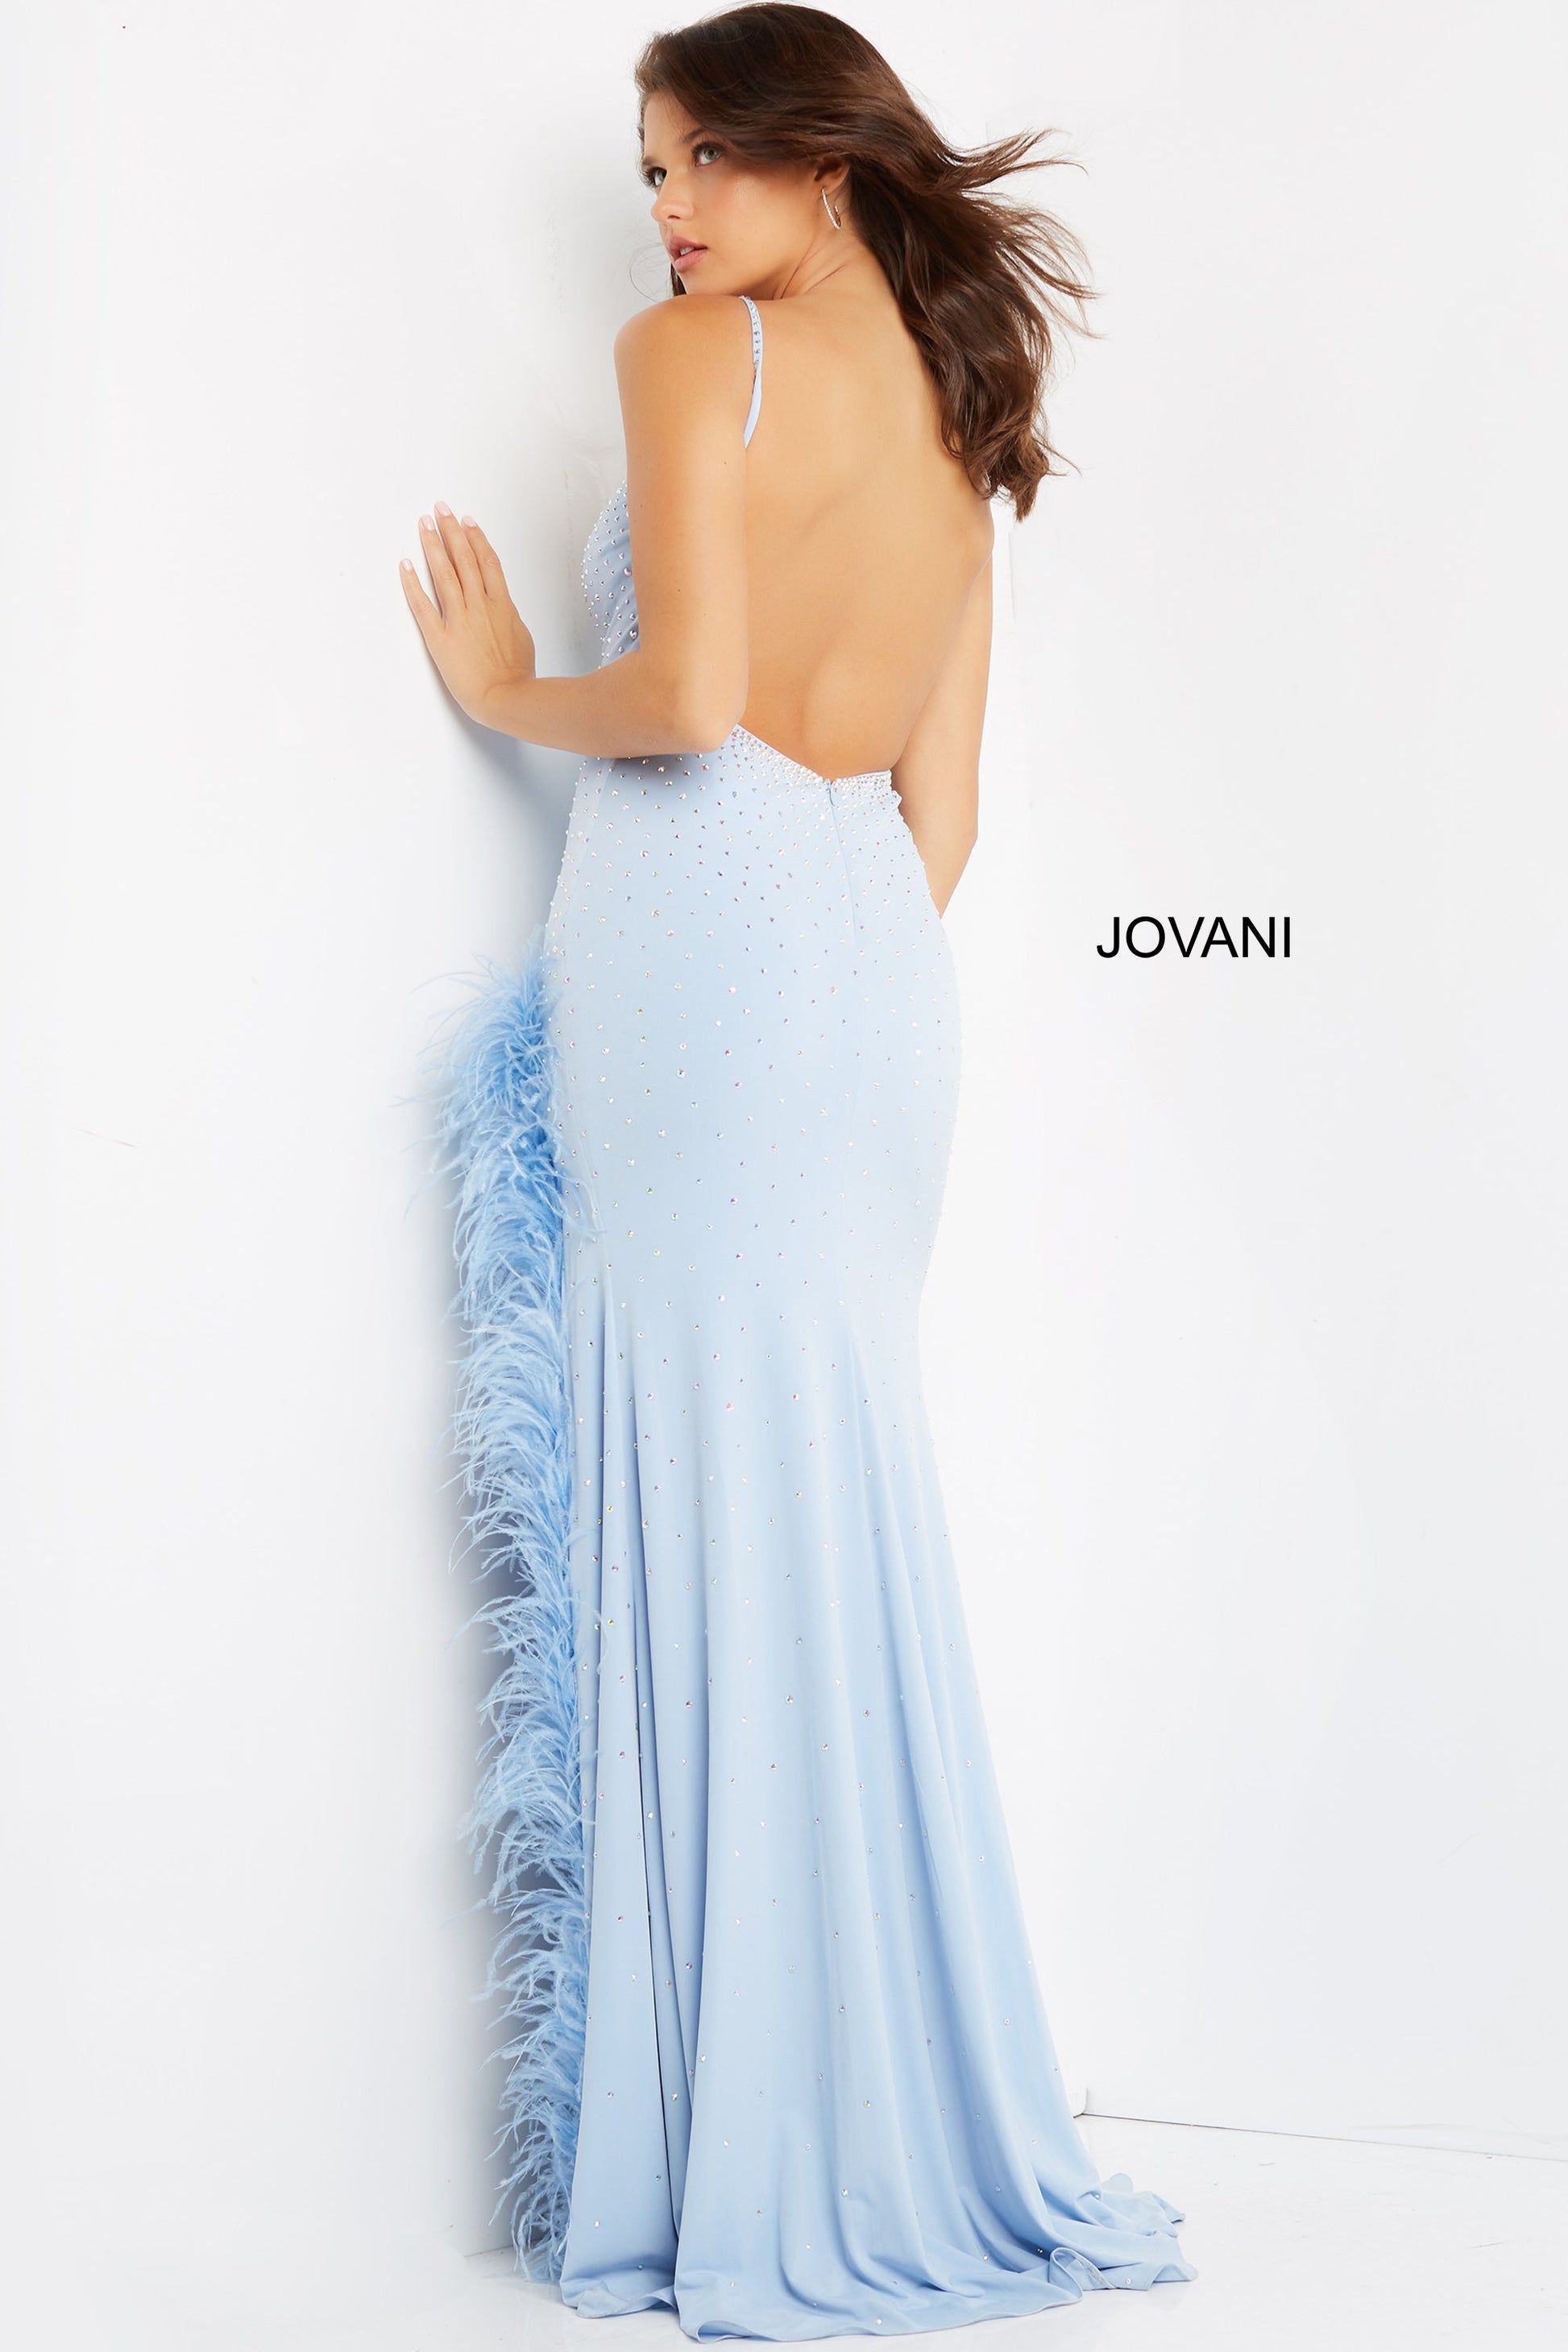 Jovani-08283-LIGHT-BLUE-prom-dress-feather-trimmed-slit-back